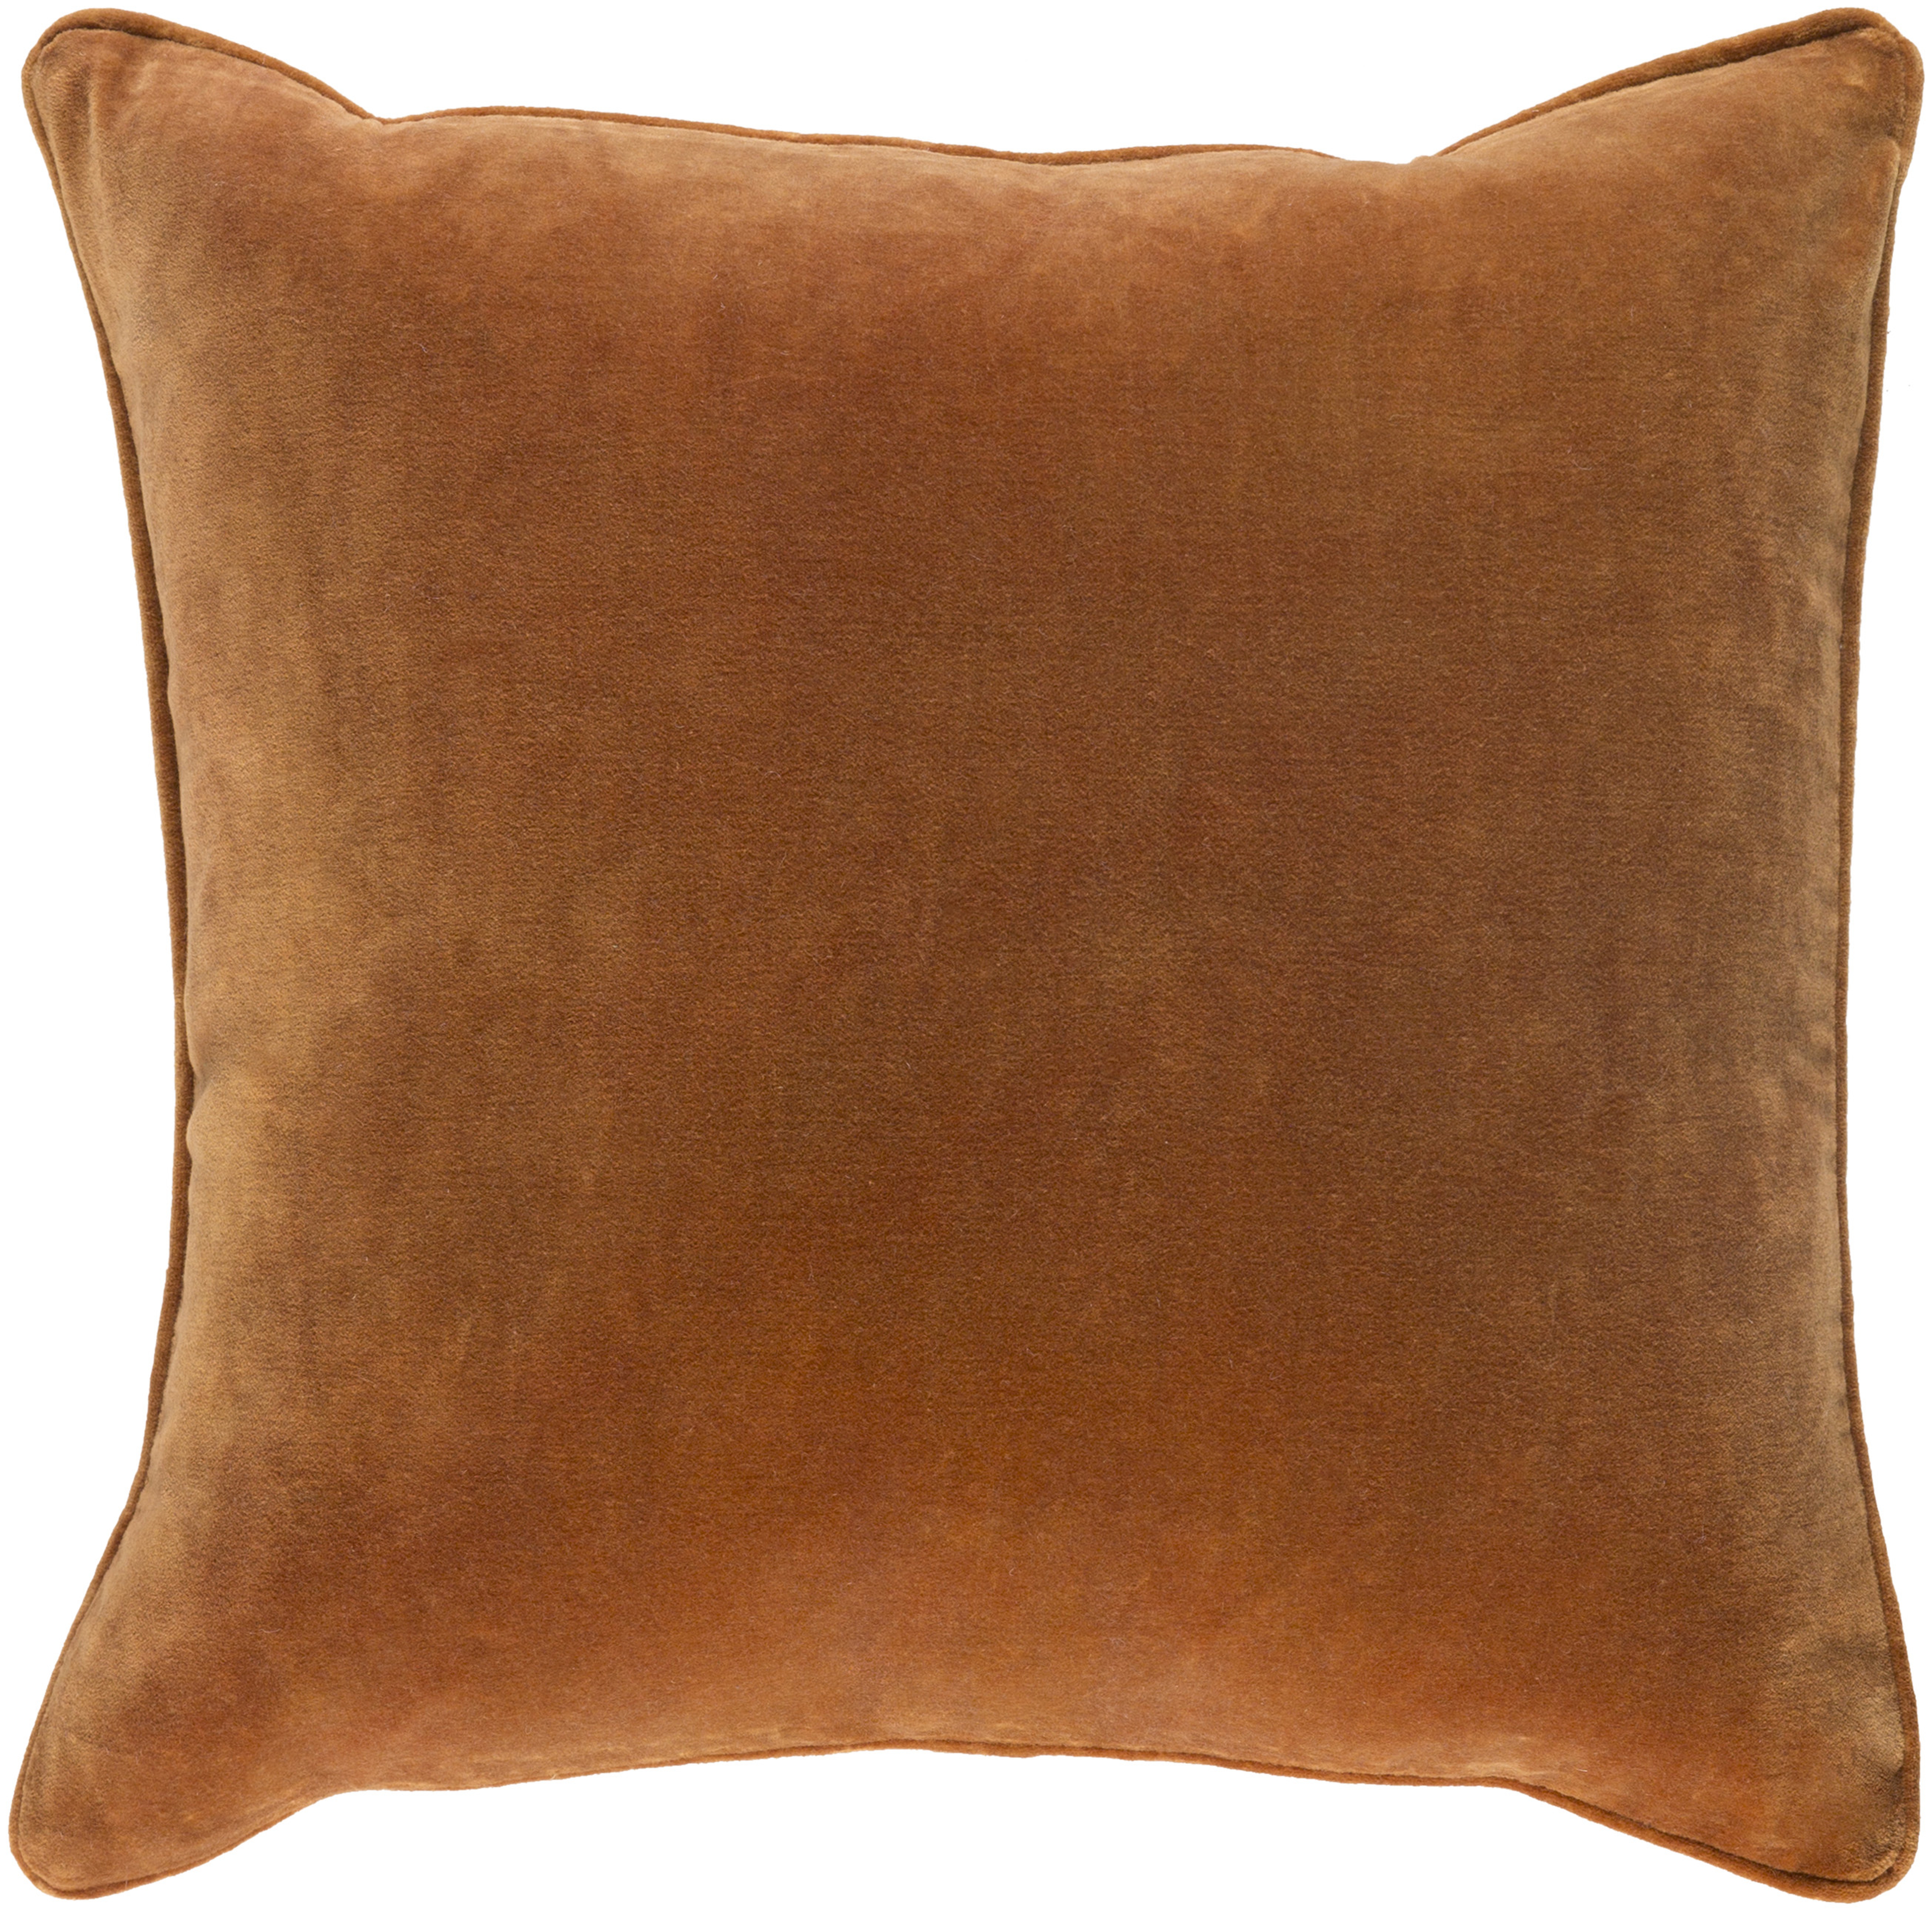 Safflower Throw Pillow, 18" x 18", pillow cover only - Surya